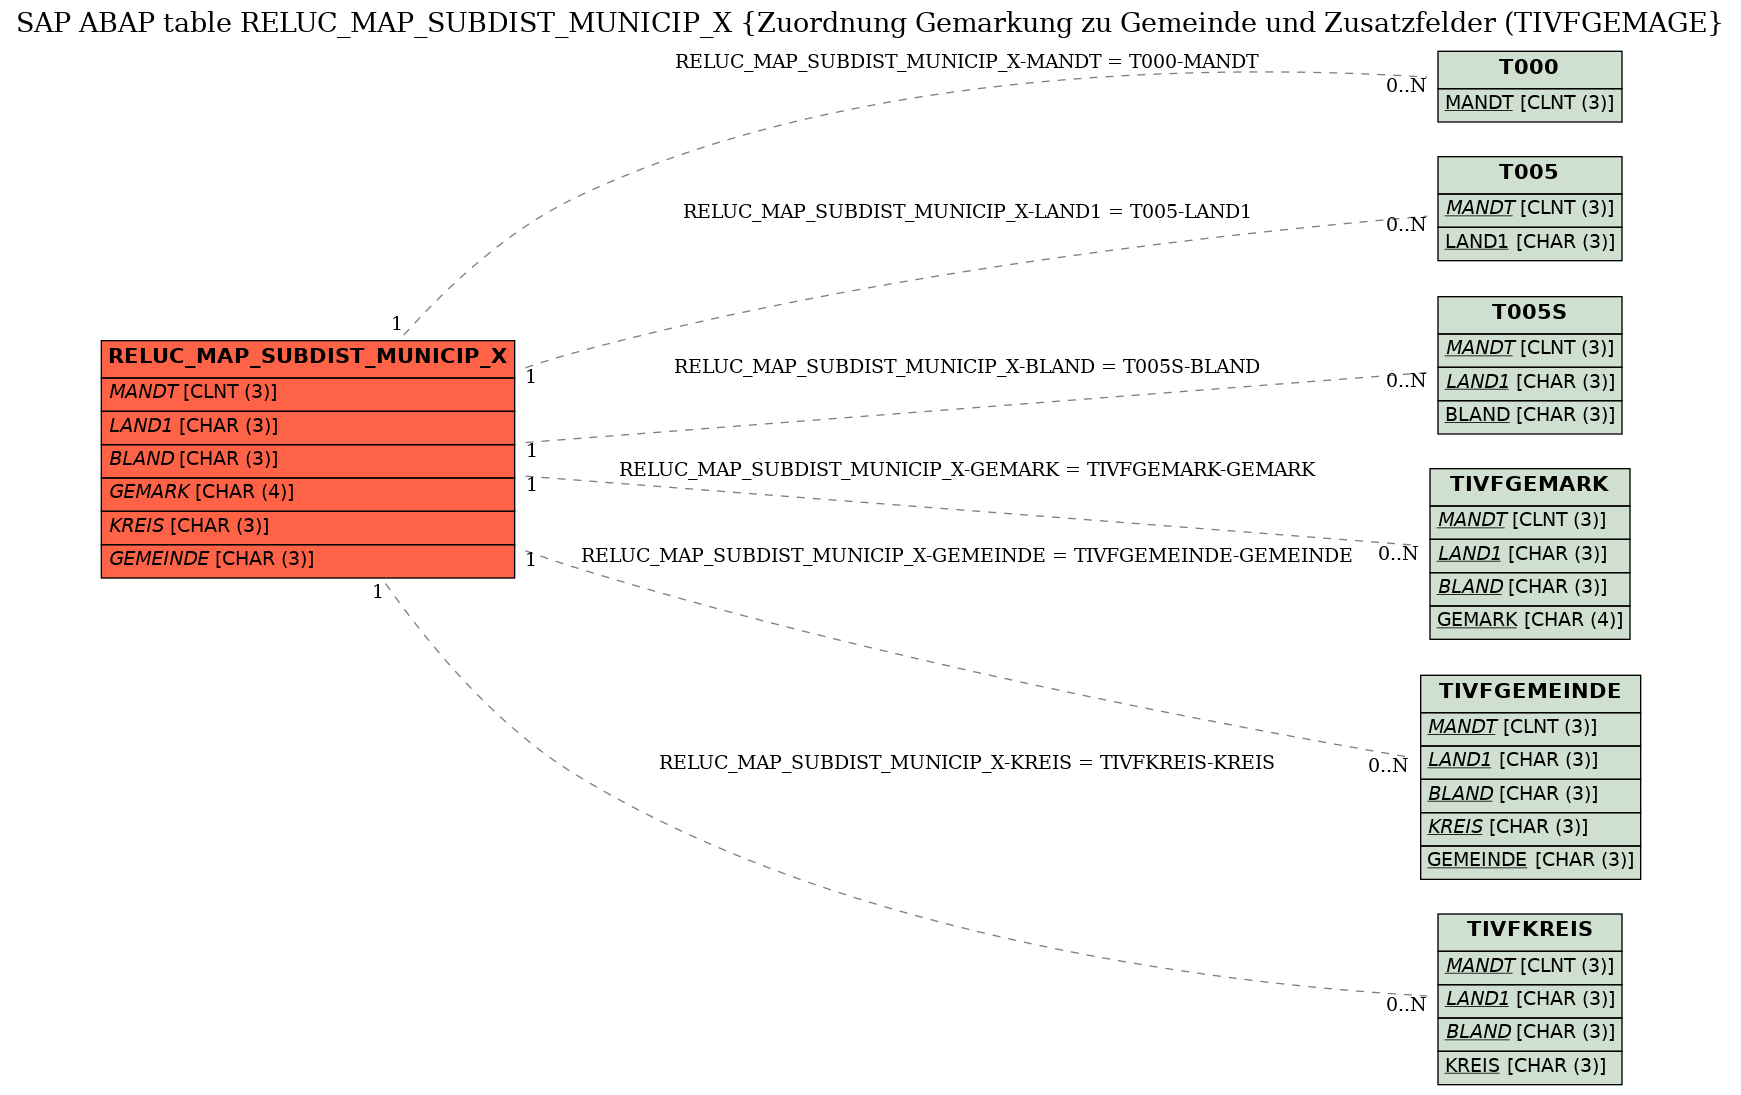 E-R Diagram for table RELUC_MAP_SUBDIST_MUNICIP_X (Zuordnung Gemarkung zu Gemeinde und Zusatzfelder (TIVFGEMAGE)